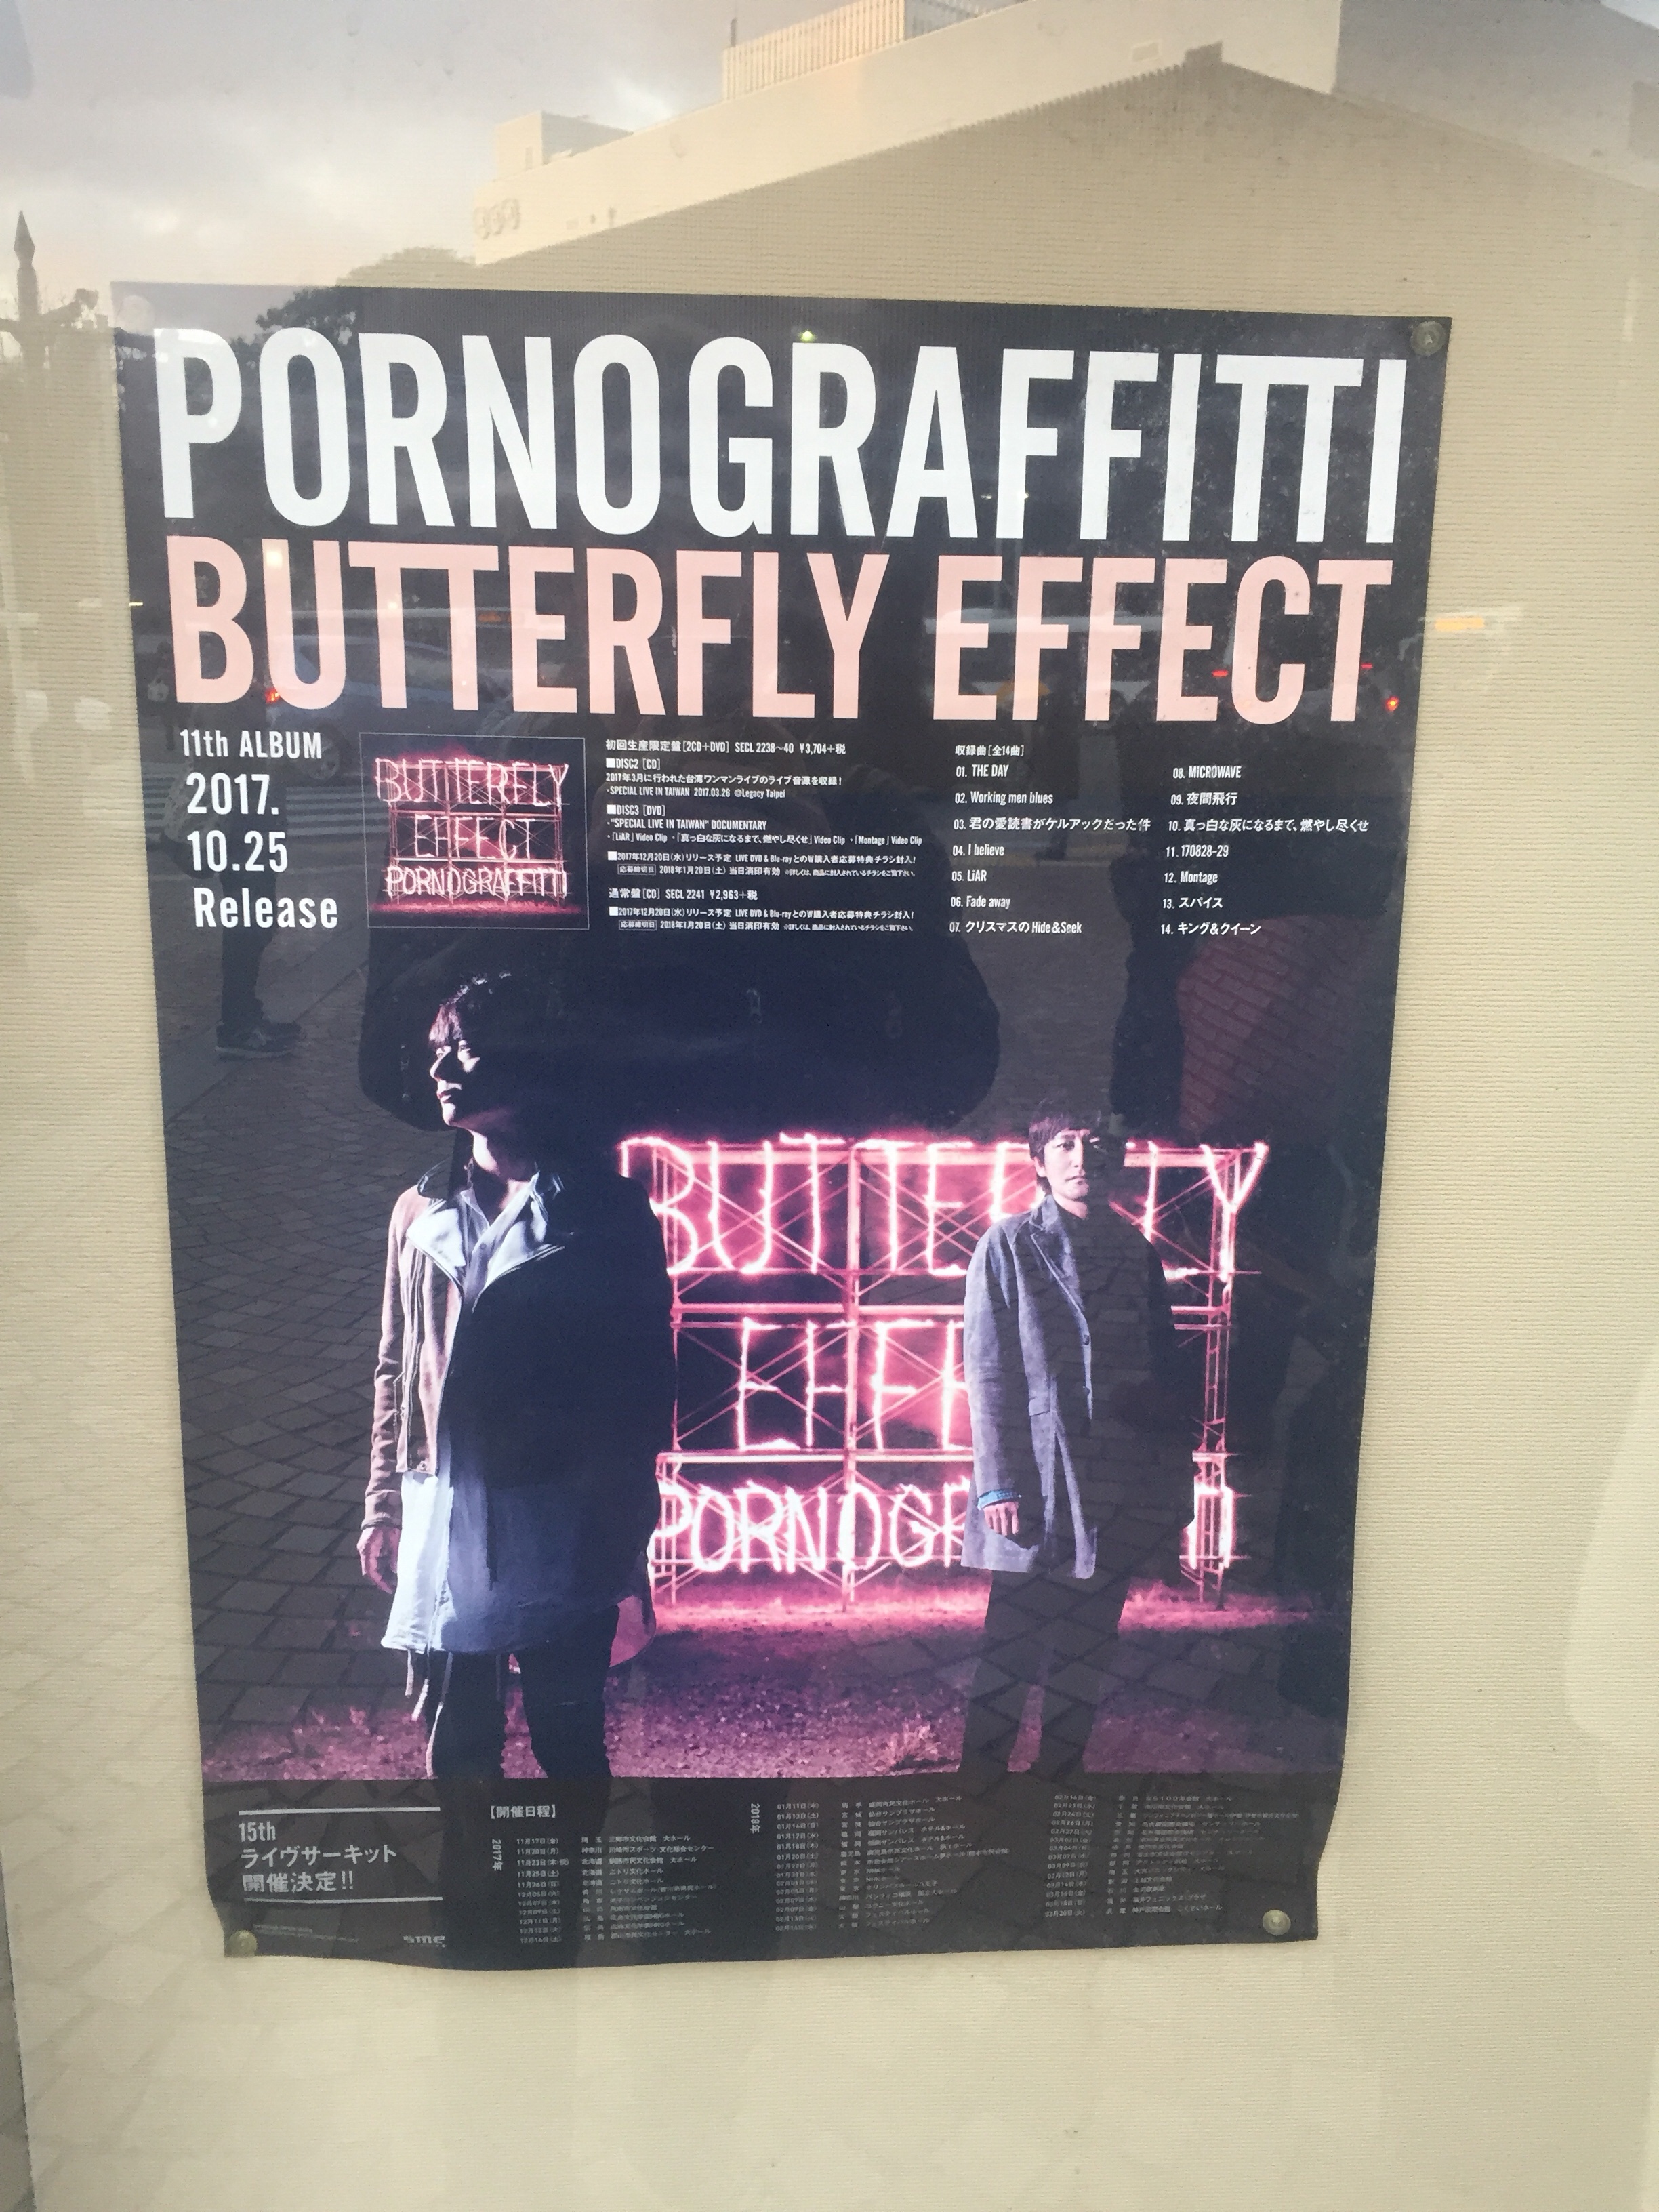 ポルノグラフィティのライブに行ってきました。